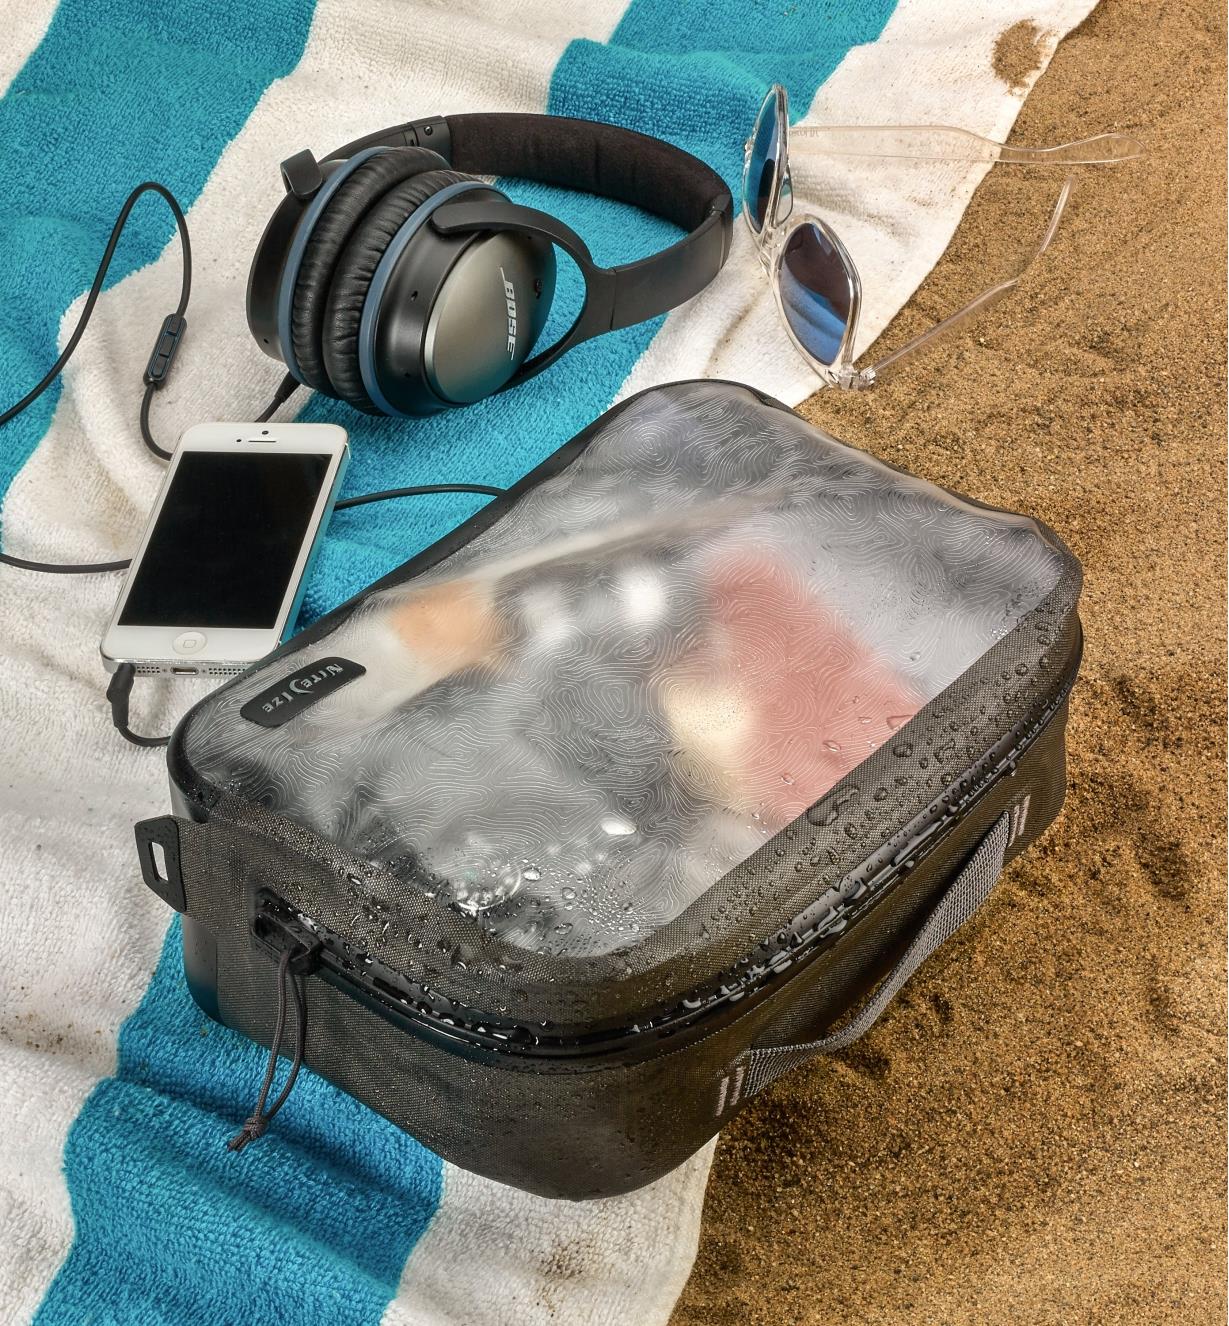 Pochette imperméable moyenne RunOff fermée et pleine d'articles sur une serviette près d'un téléphone cellulaire, d'un casque d'écoute et de lunettes de soleil